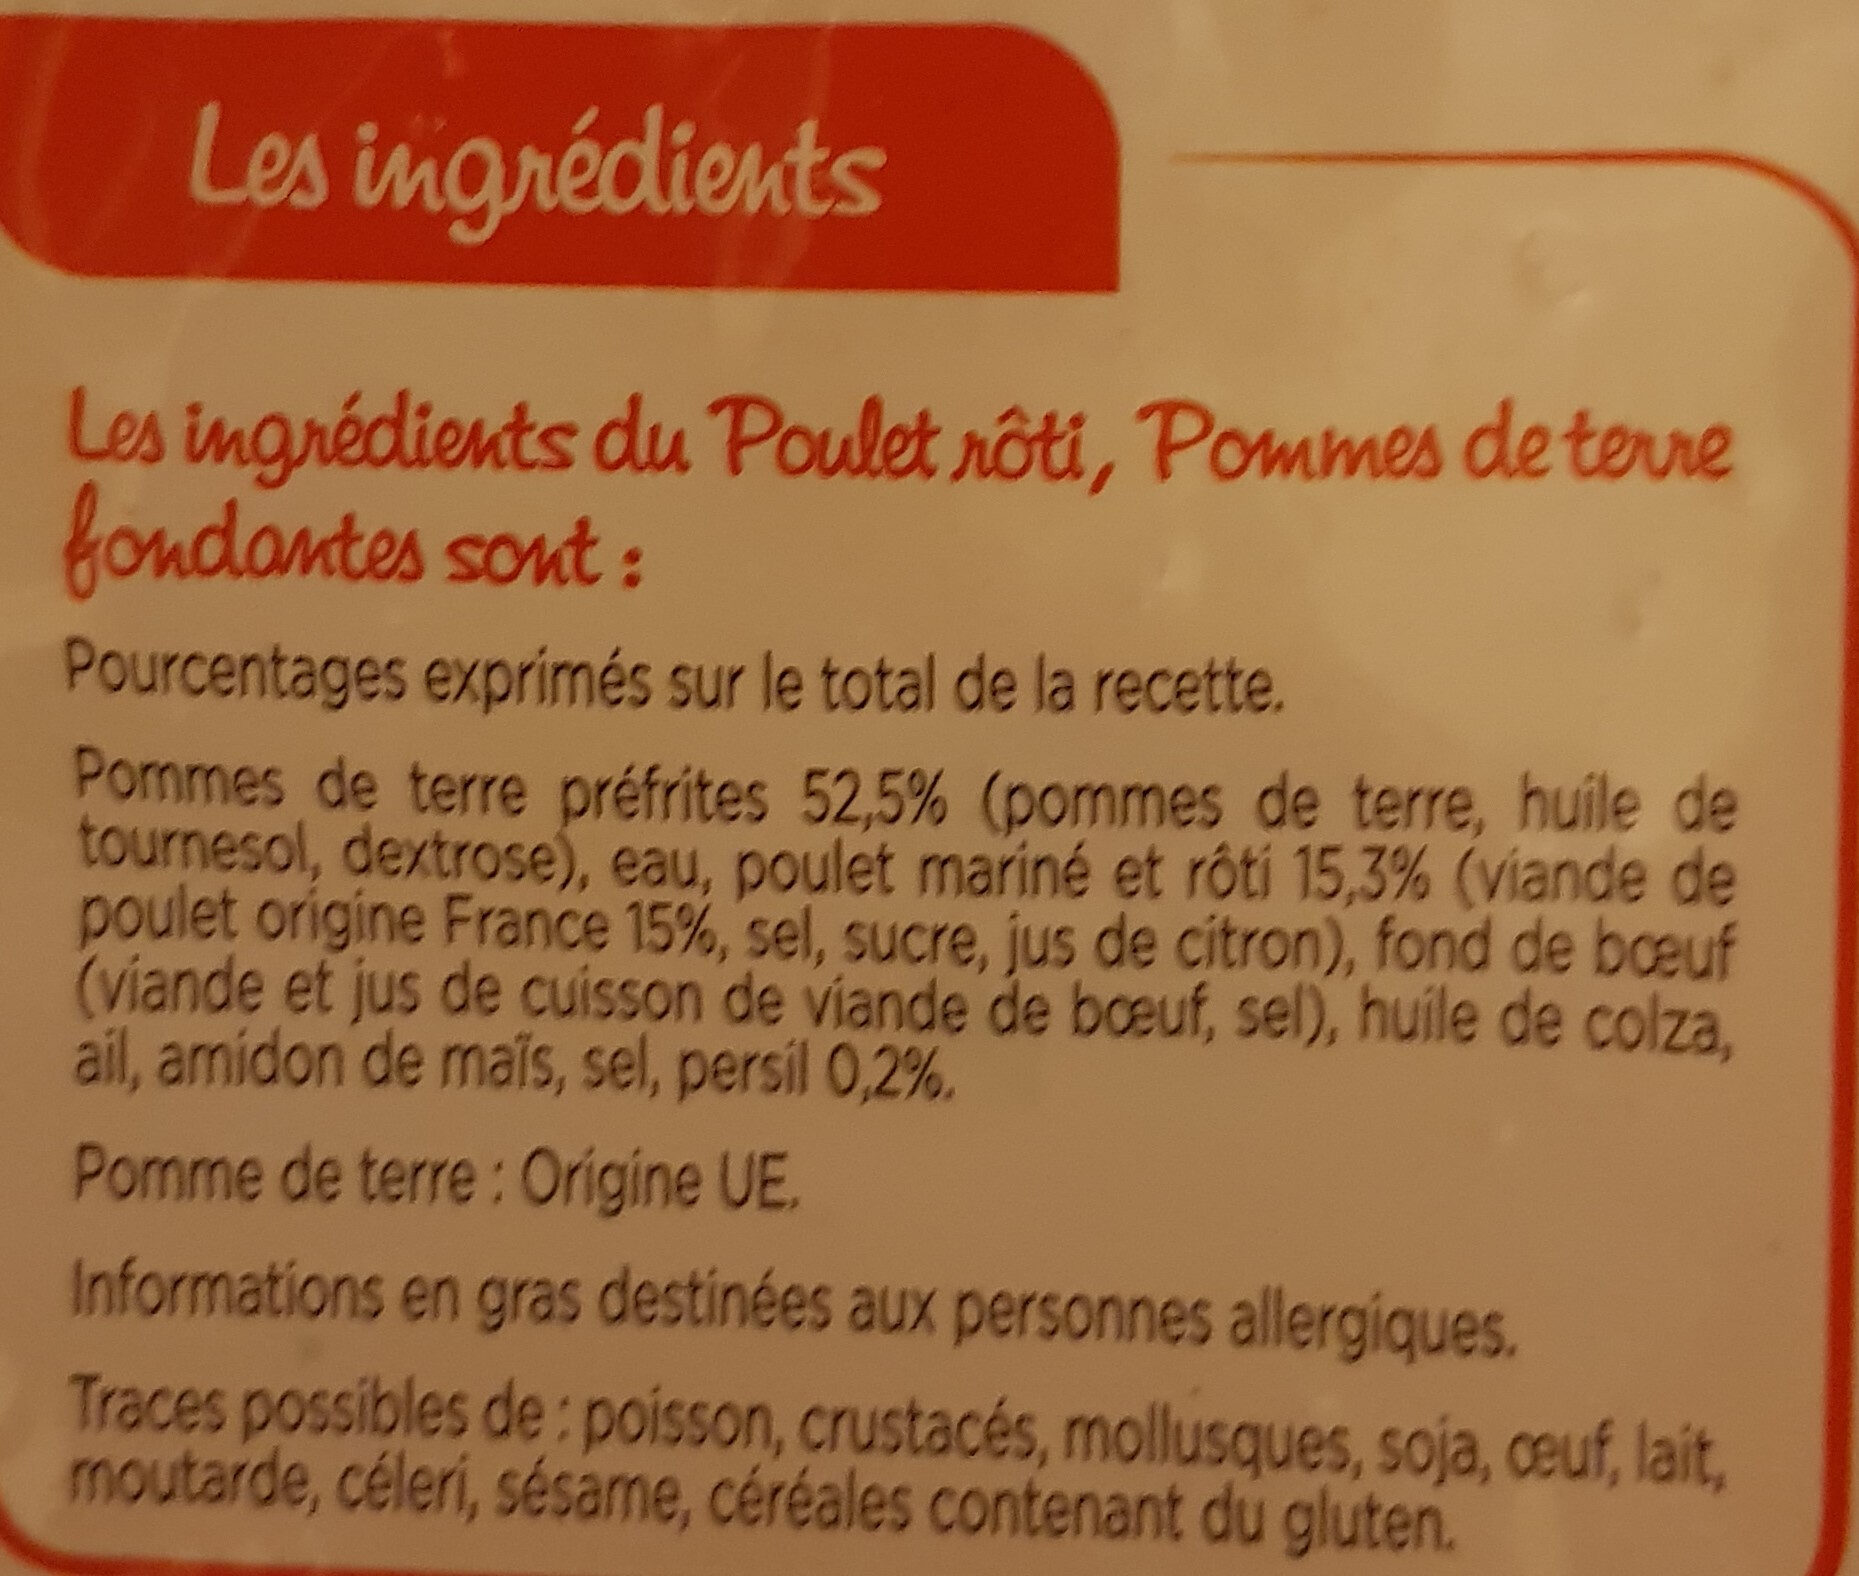 Poulet Rôti et Pommes de terre Fondantes - Ingredients - fr